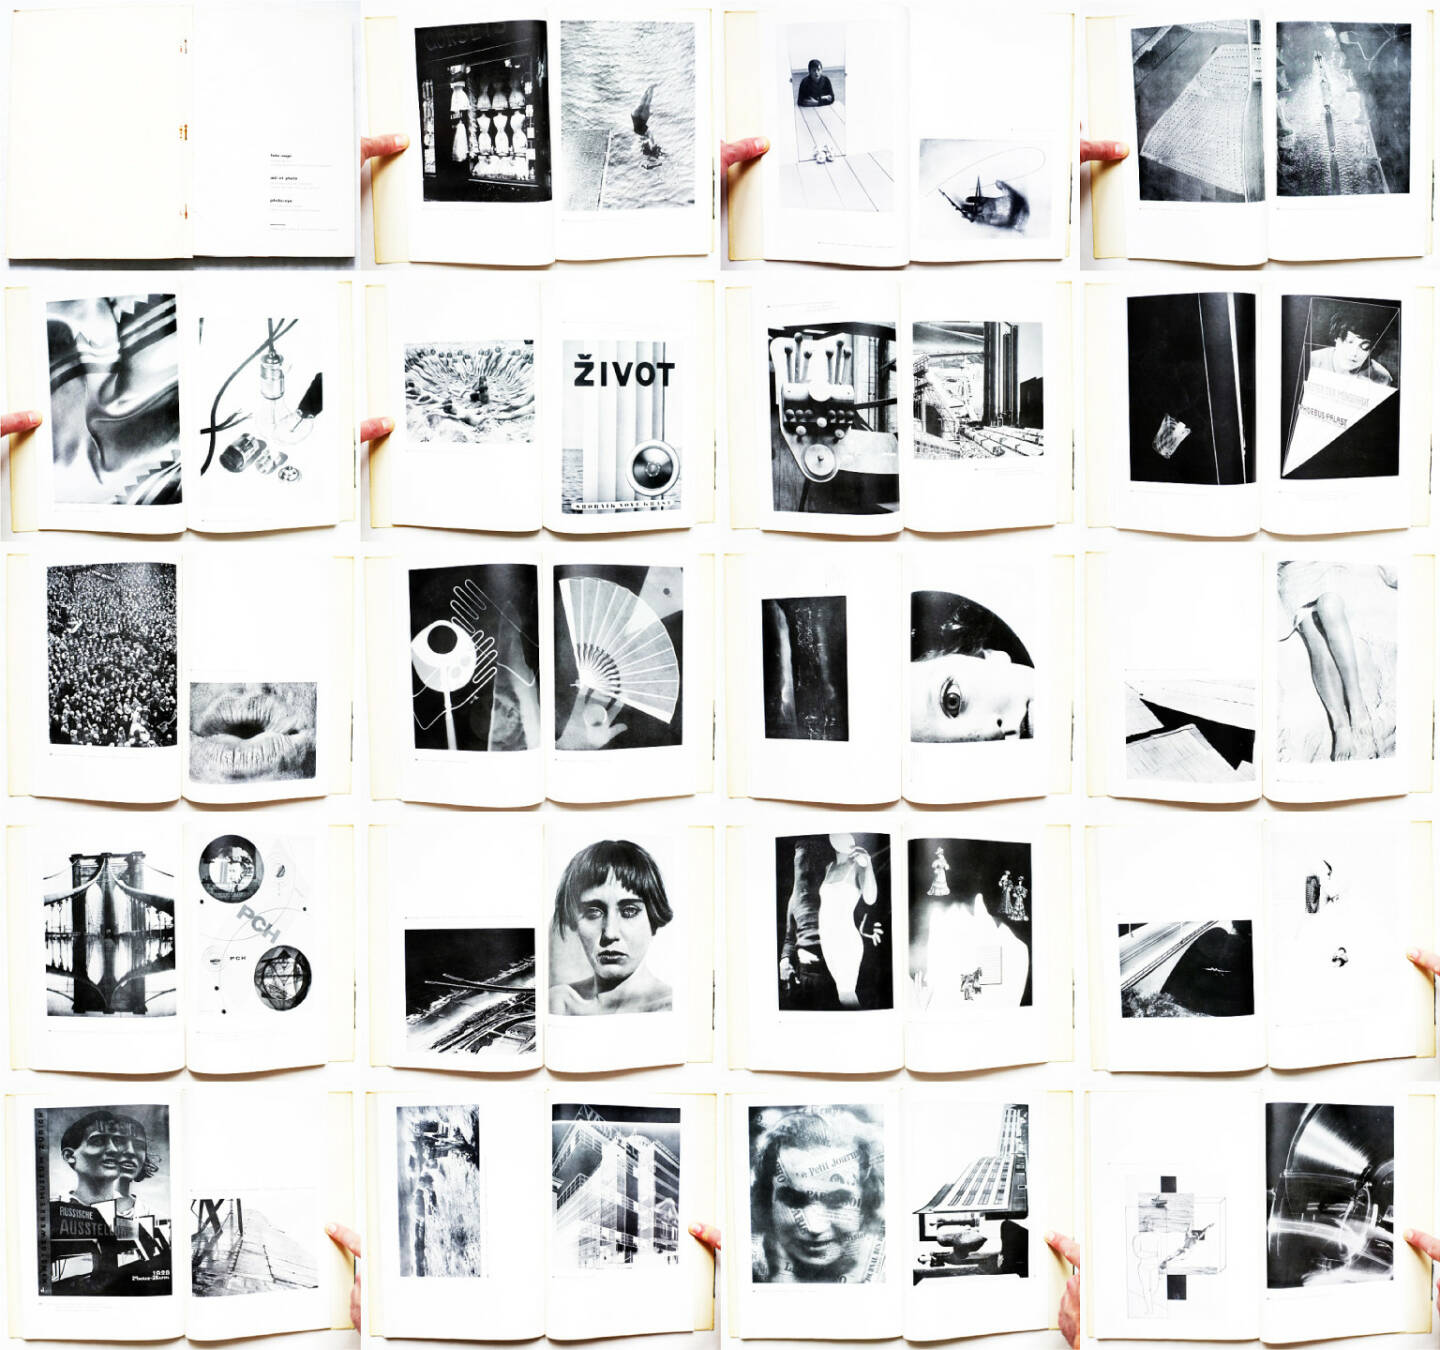 Franz Roh & Jan Tschichold - Foto-Auge, Oeil et Photo, Photo-Eye, Akademischer Verlag Dr. Fritz Wedekind & Co 1929, Beispielseiten, sample spreads - http://josefchladek.com/book/franz_roh_-_foto-auge_oeil_et_photo_photo-eye